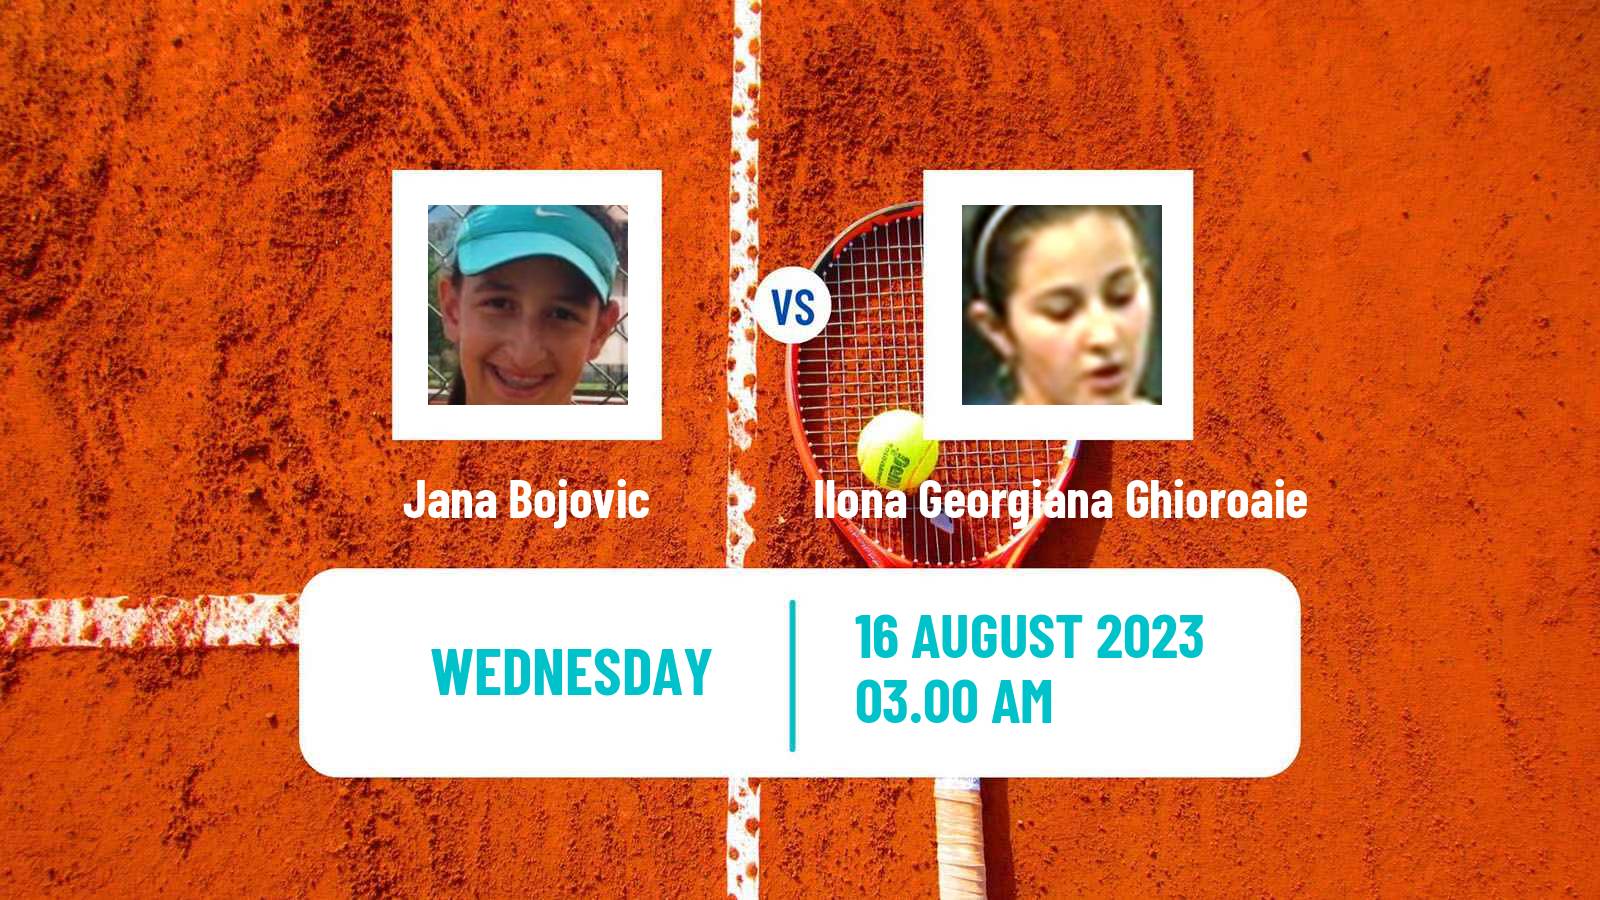 Tennis ITF W25 Bistrita Women Jana Bojovic - Ilona Georgiana Ghioroaie